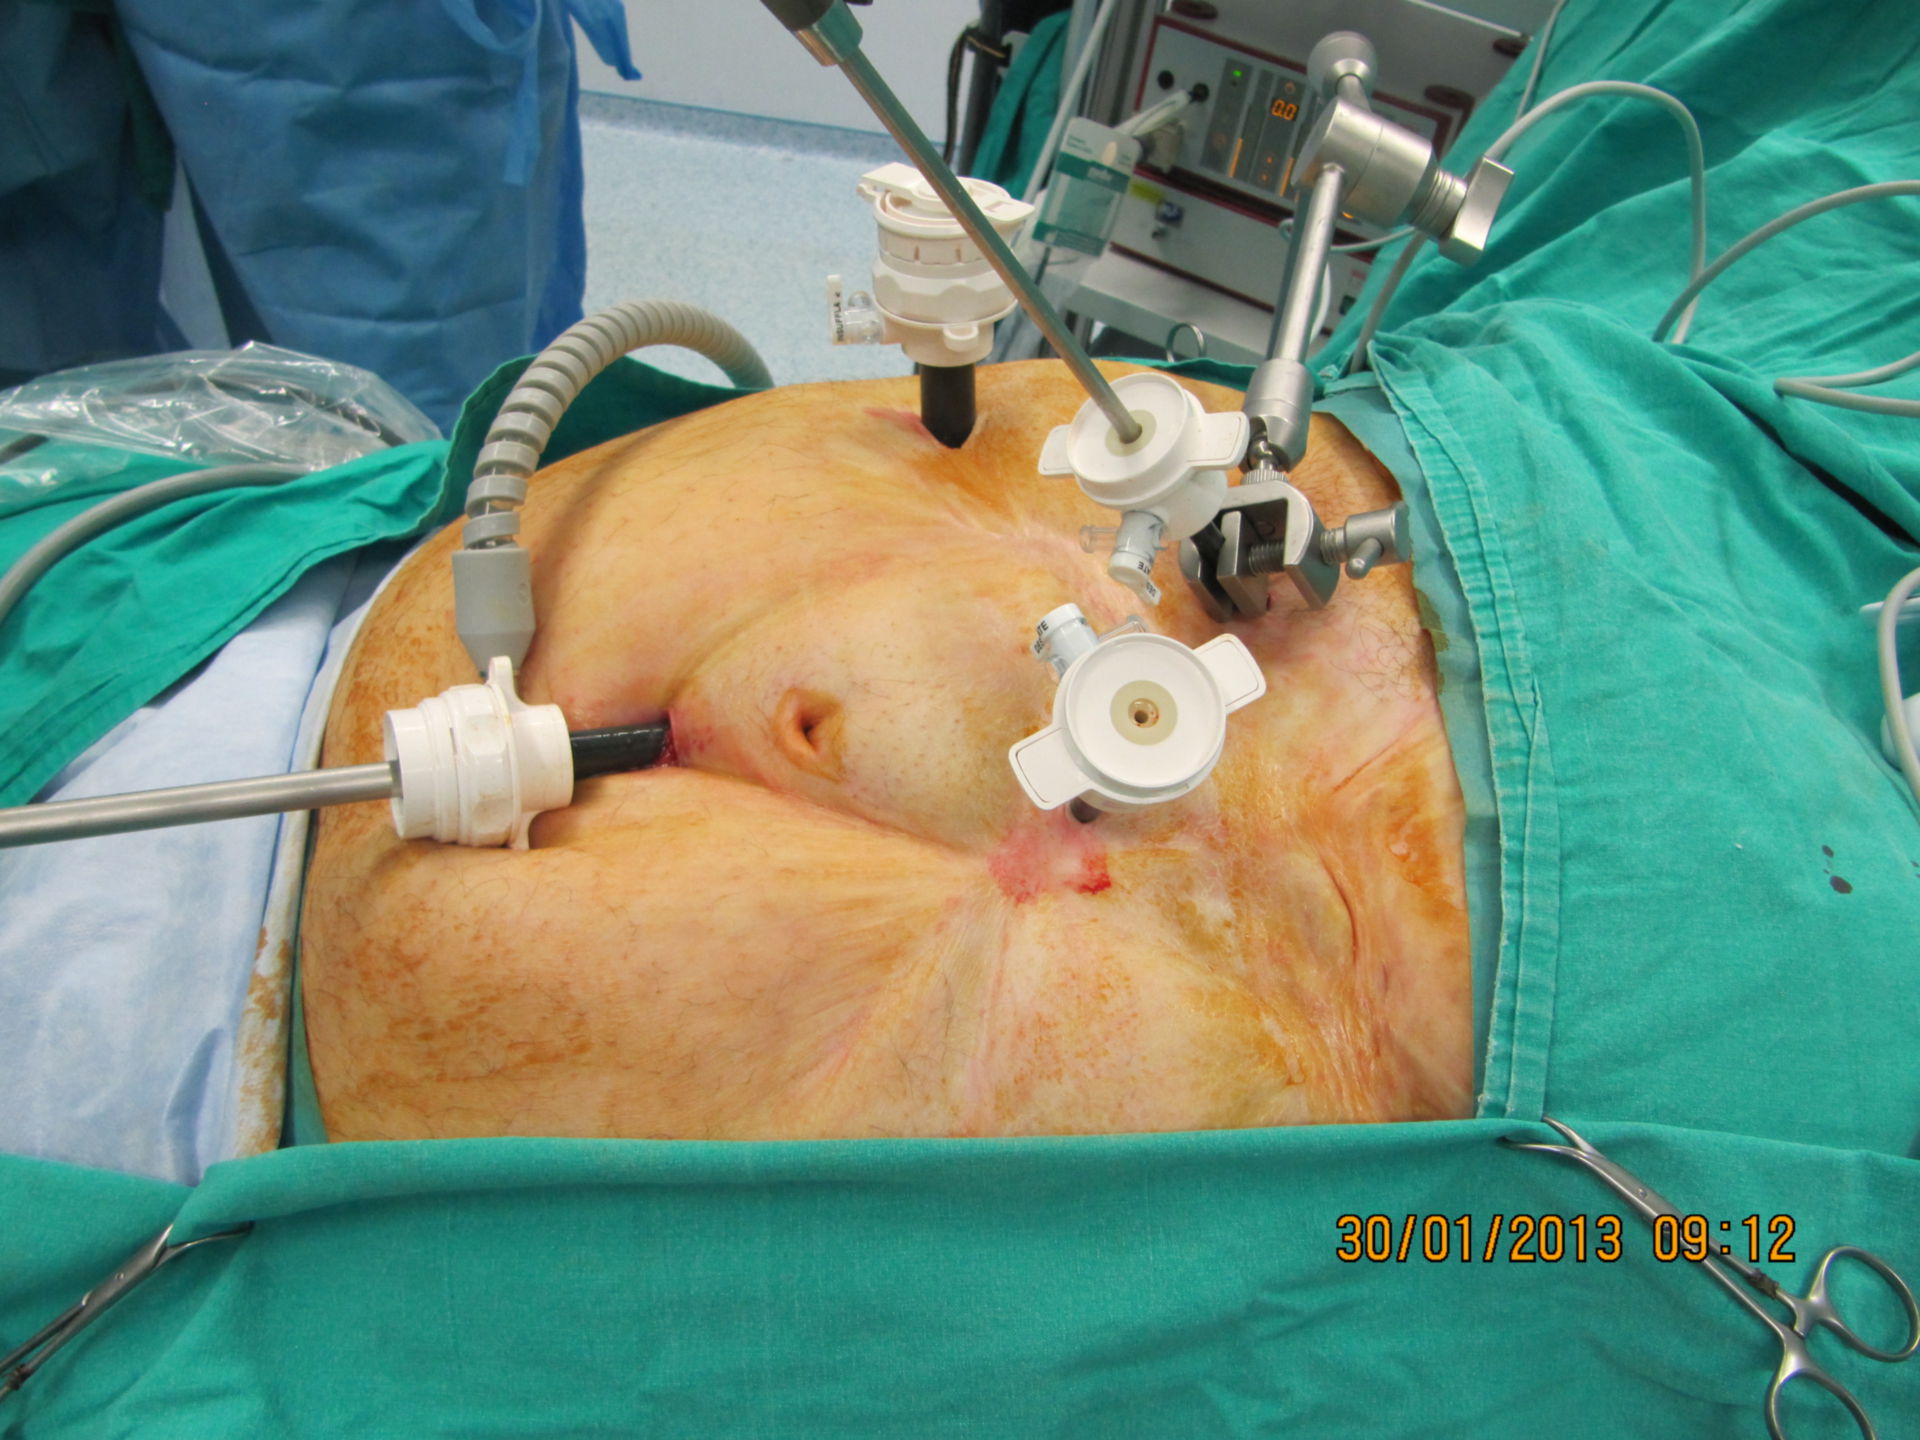 Trokar Insertionen für die laparoskopische Chirurgie